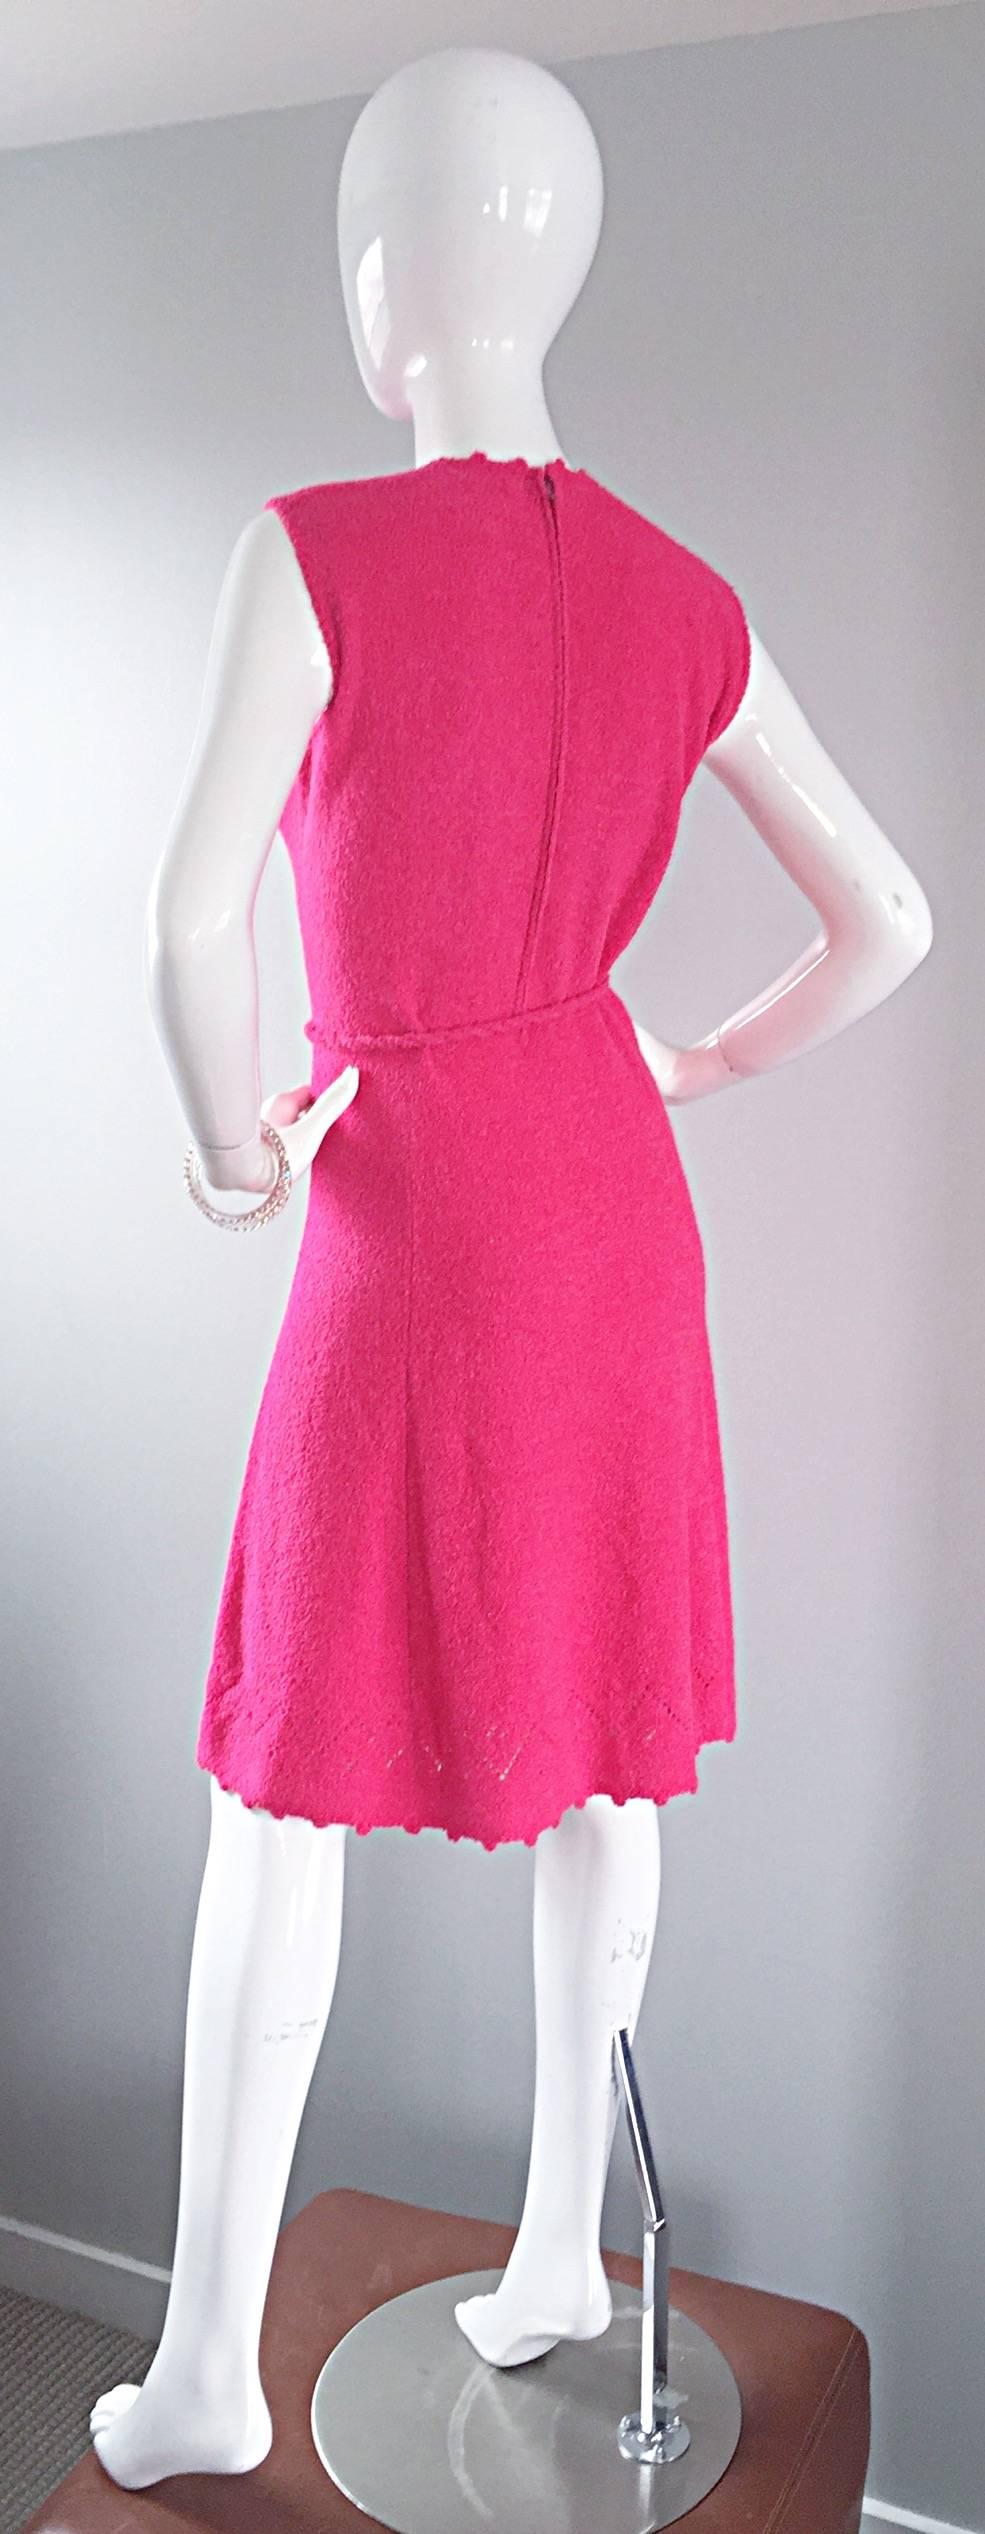 hot pink crochet dress